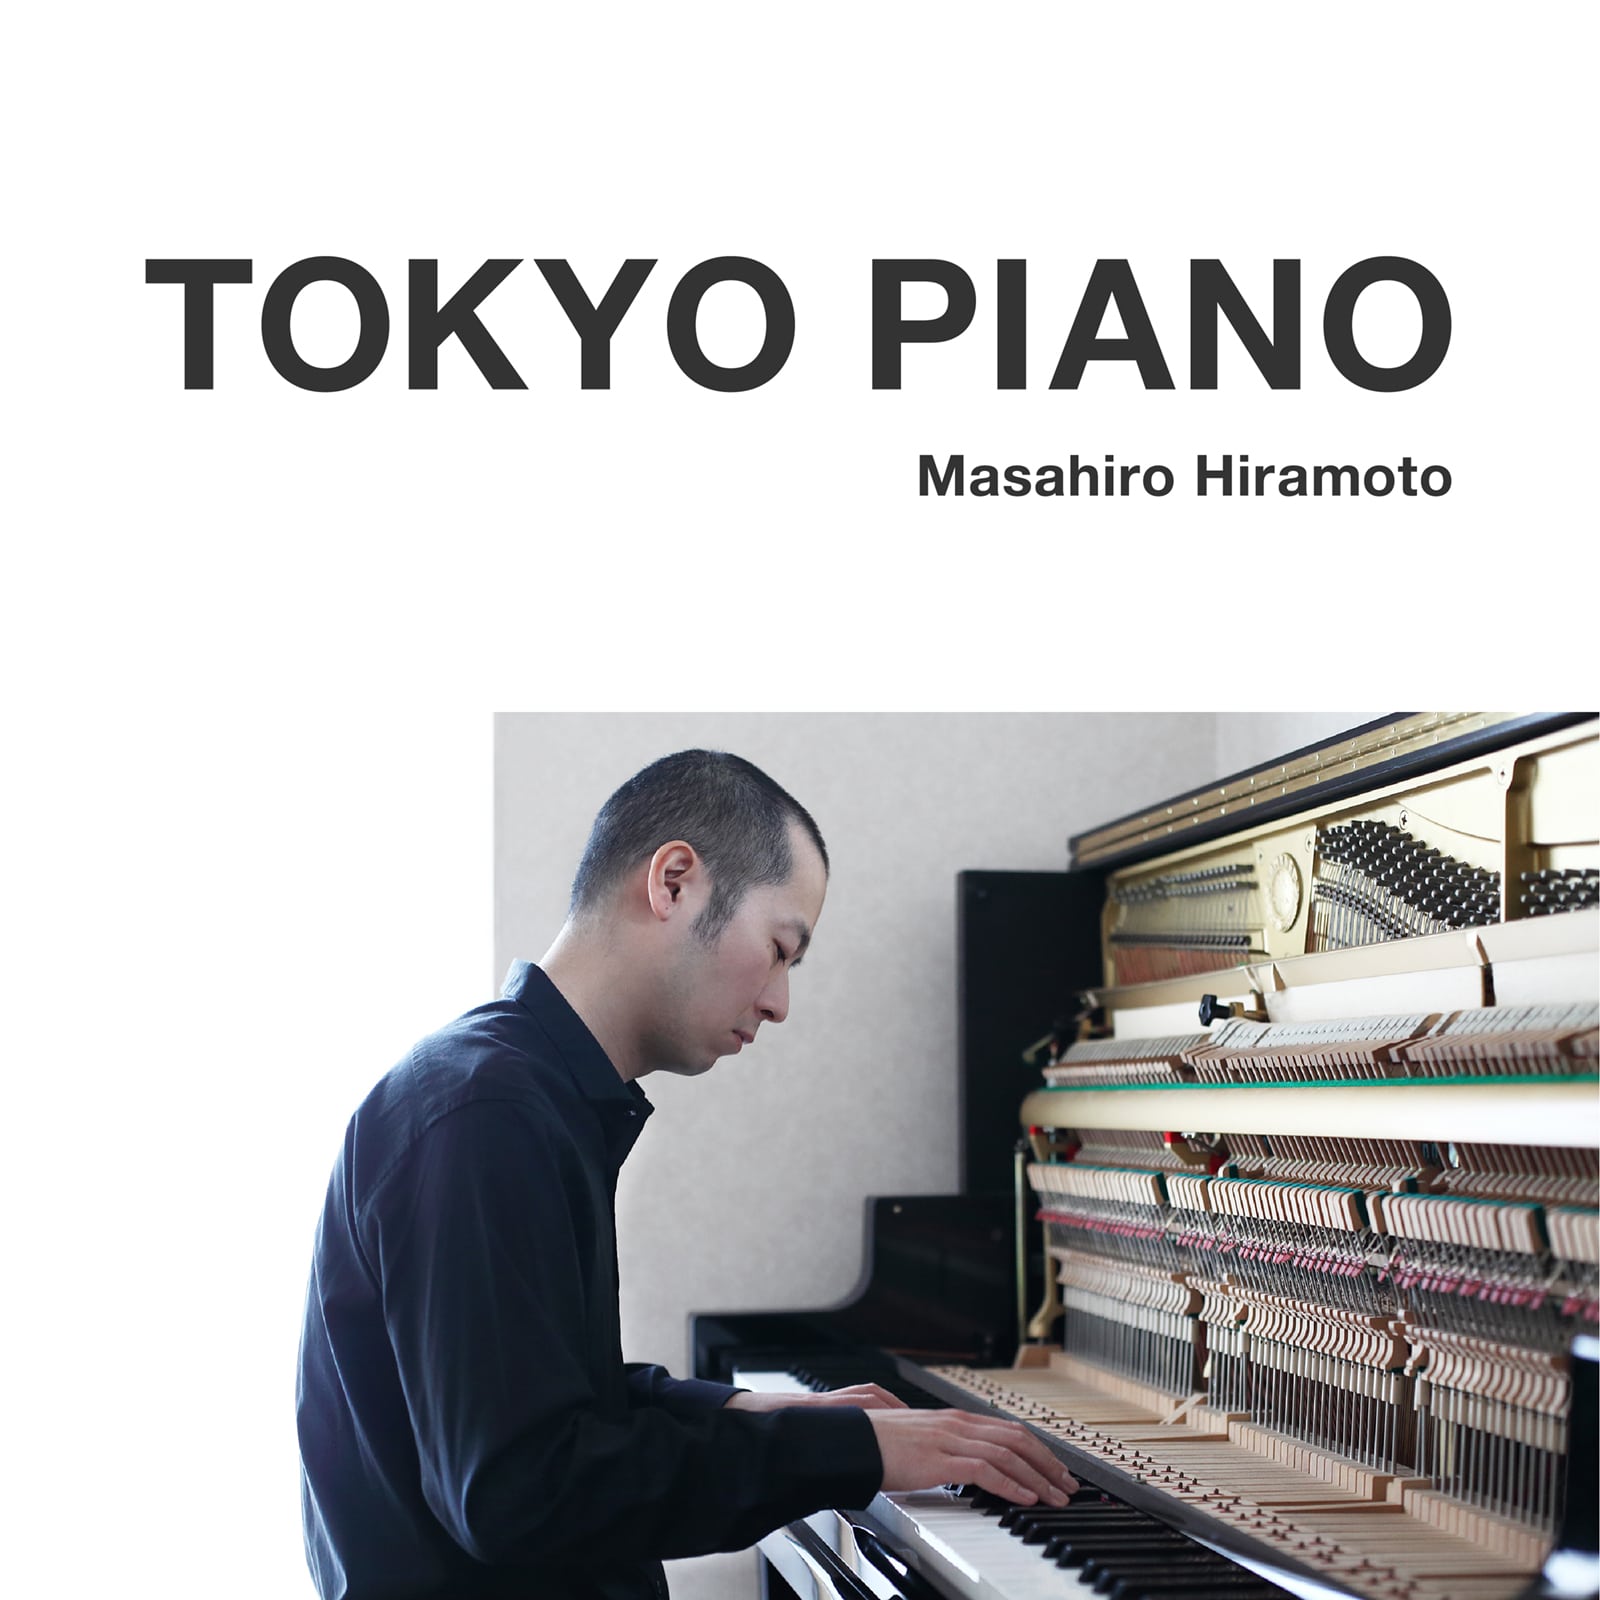 平本正宏ピアノアルバム『TOKYO PIANO』全曲無料公開